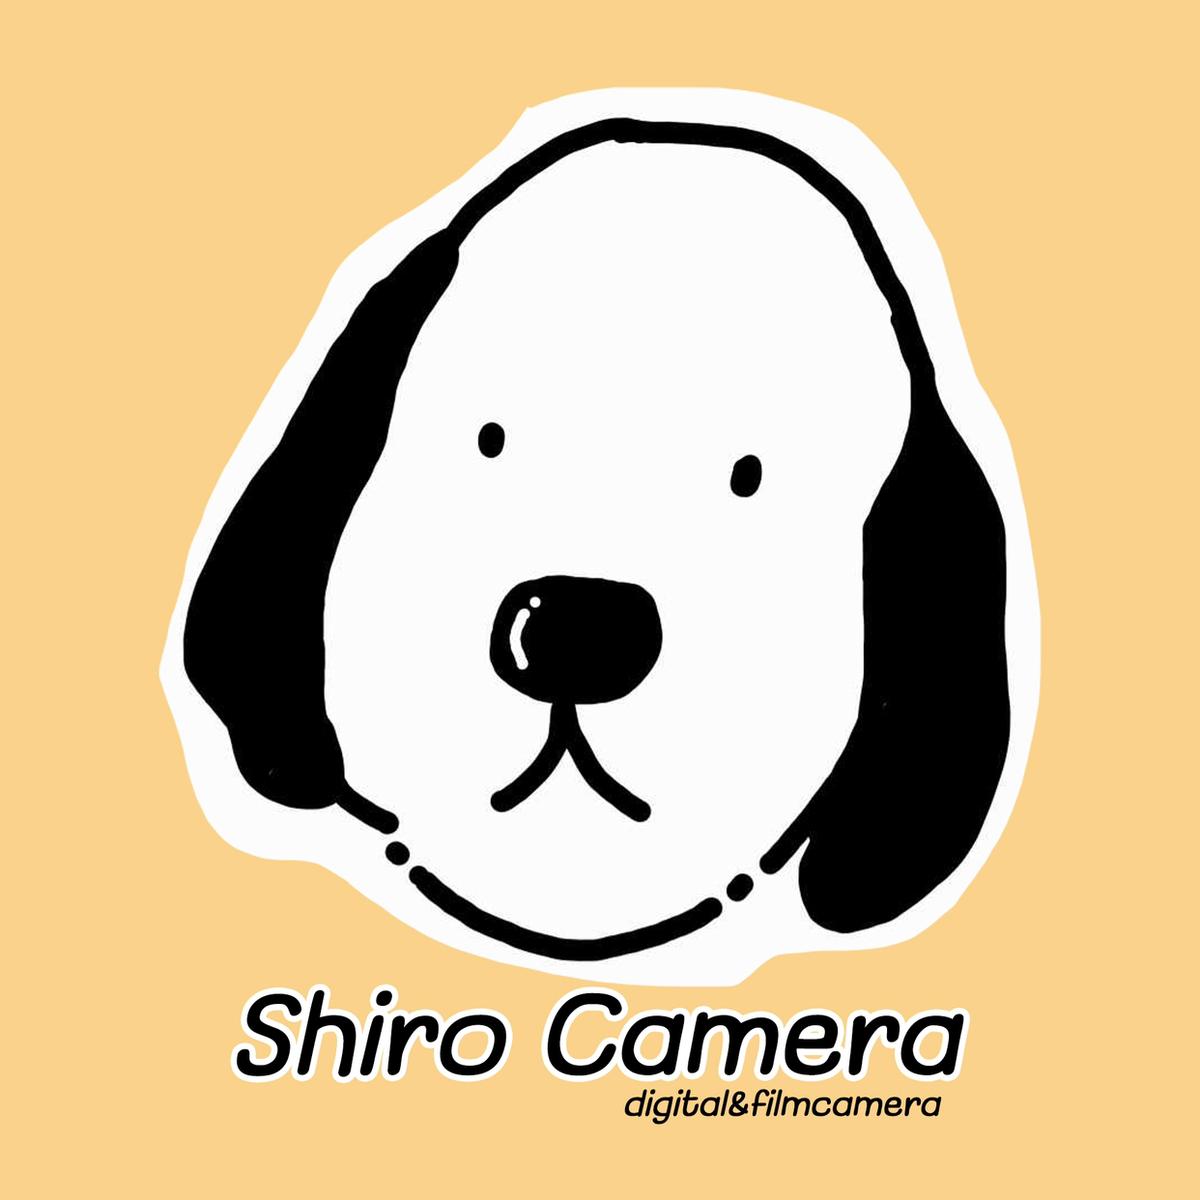 Shiro Camera